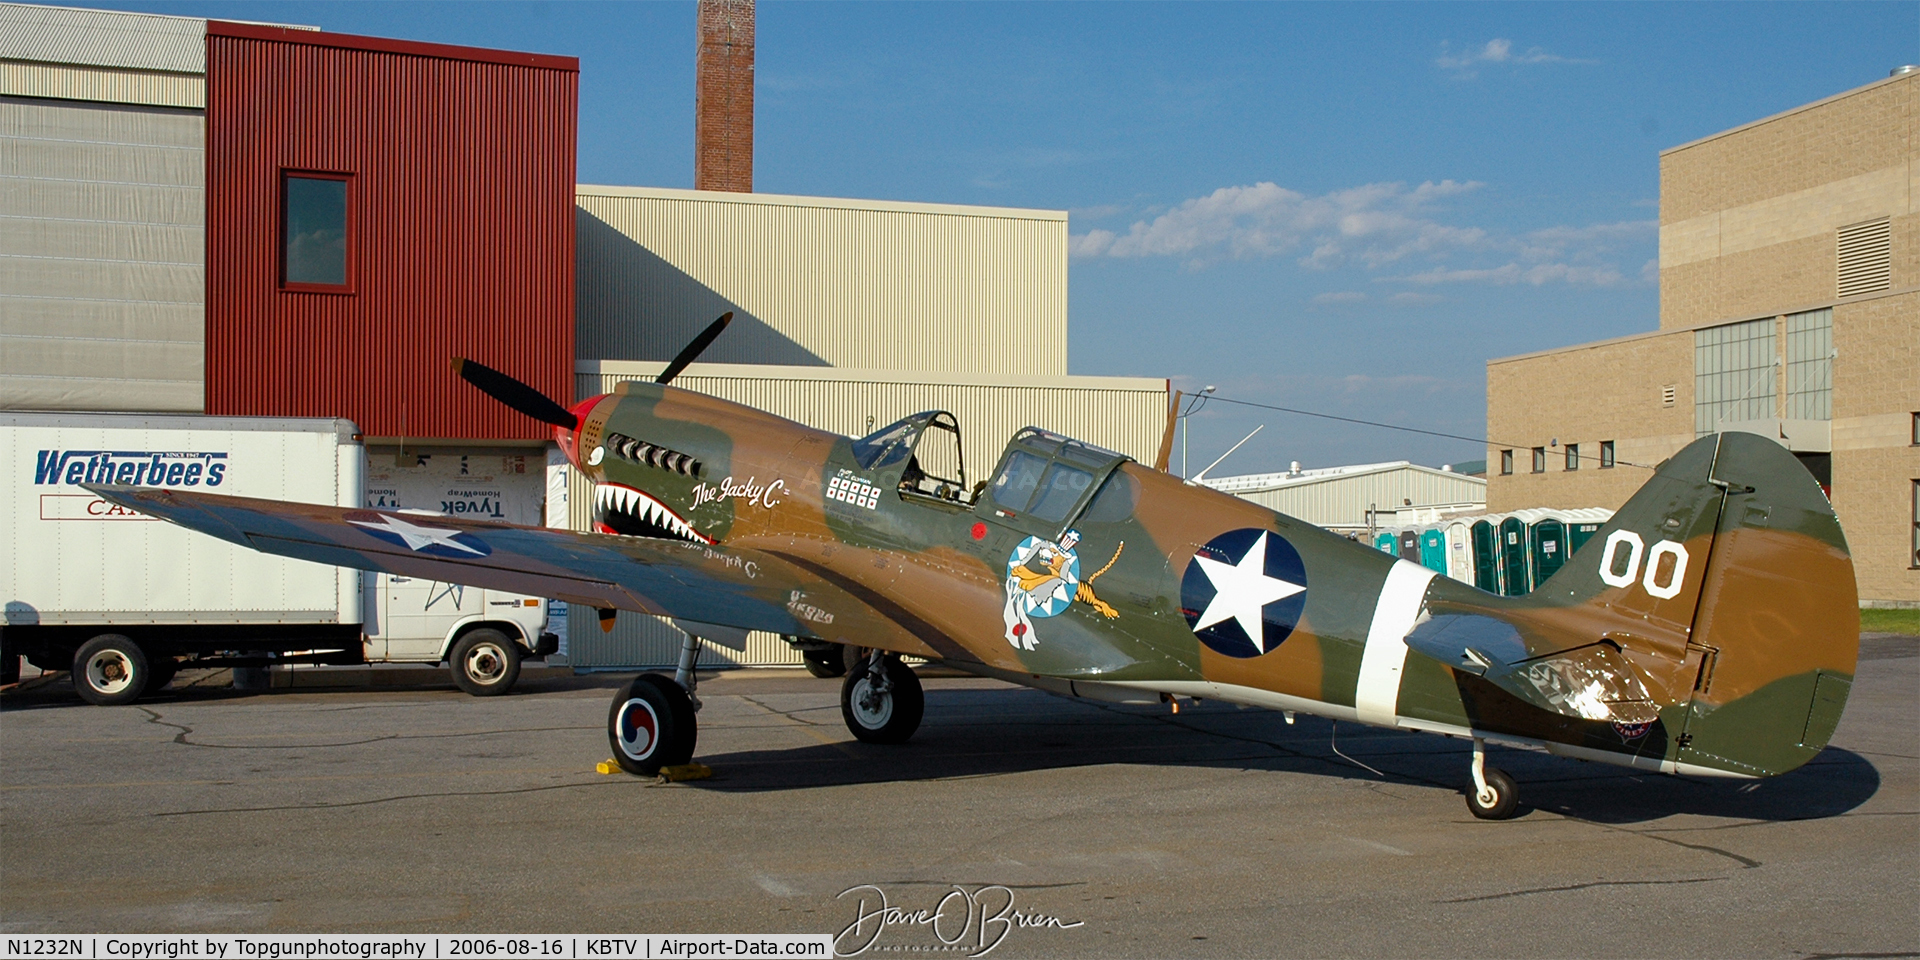 N1232N, 1943 Curtiss P-40N Warhawk C/N 27483, The Jacky C